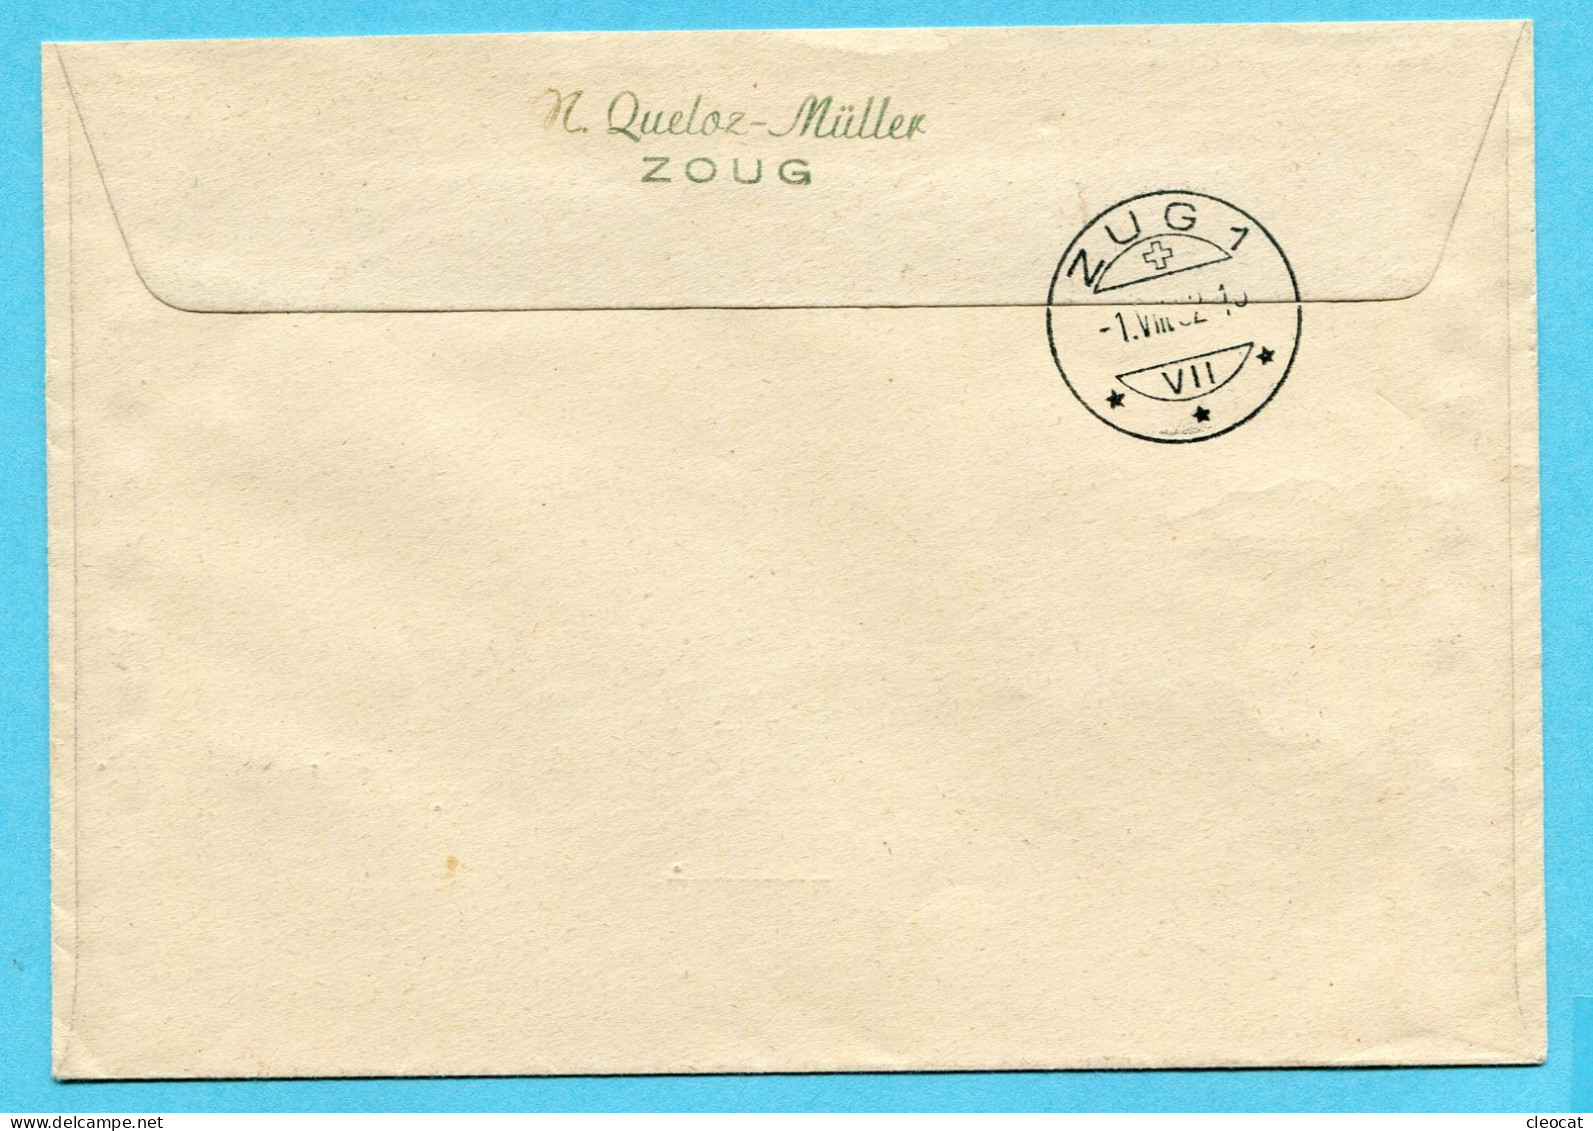 Brief Pro Patria - Gestempelt Zürich Bundesfeier 1952 Und Schweiz. Automobil-Postbureau 1.VIII.52 Auf P2 - Brieven En Documenten